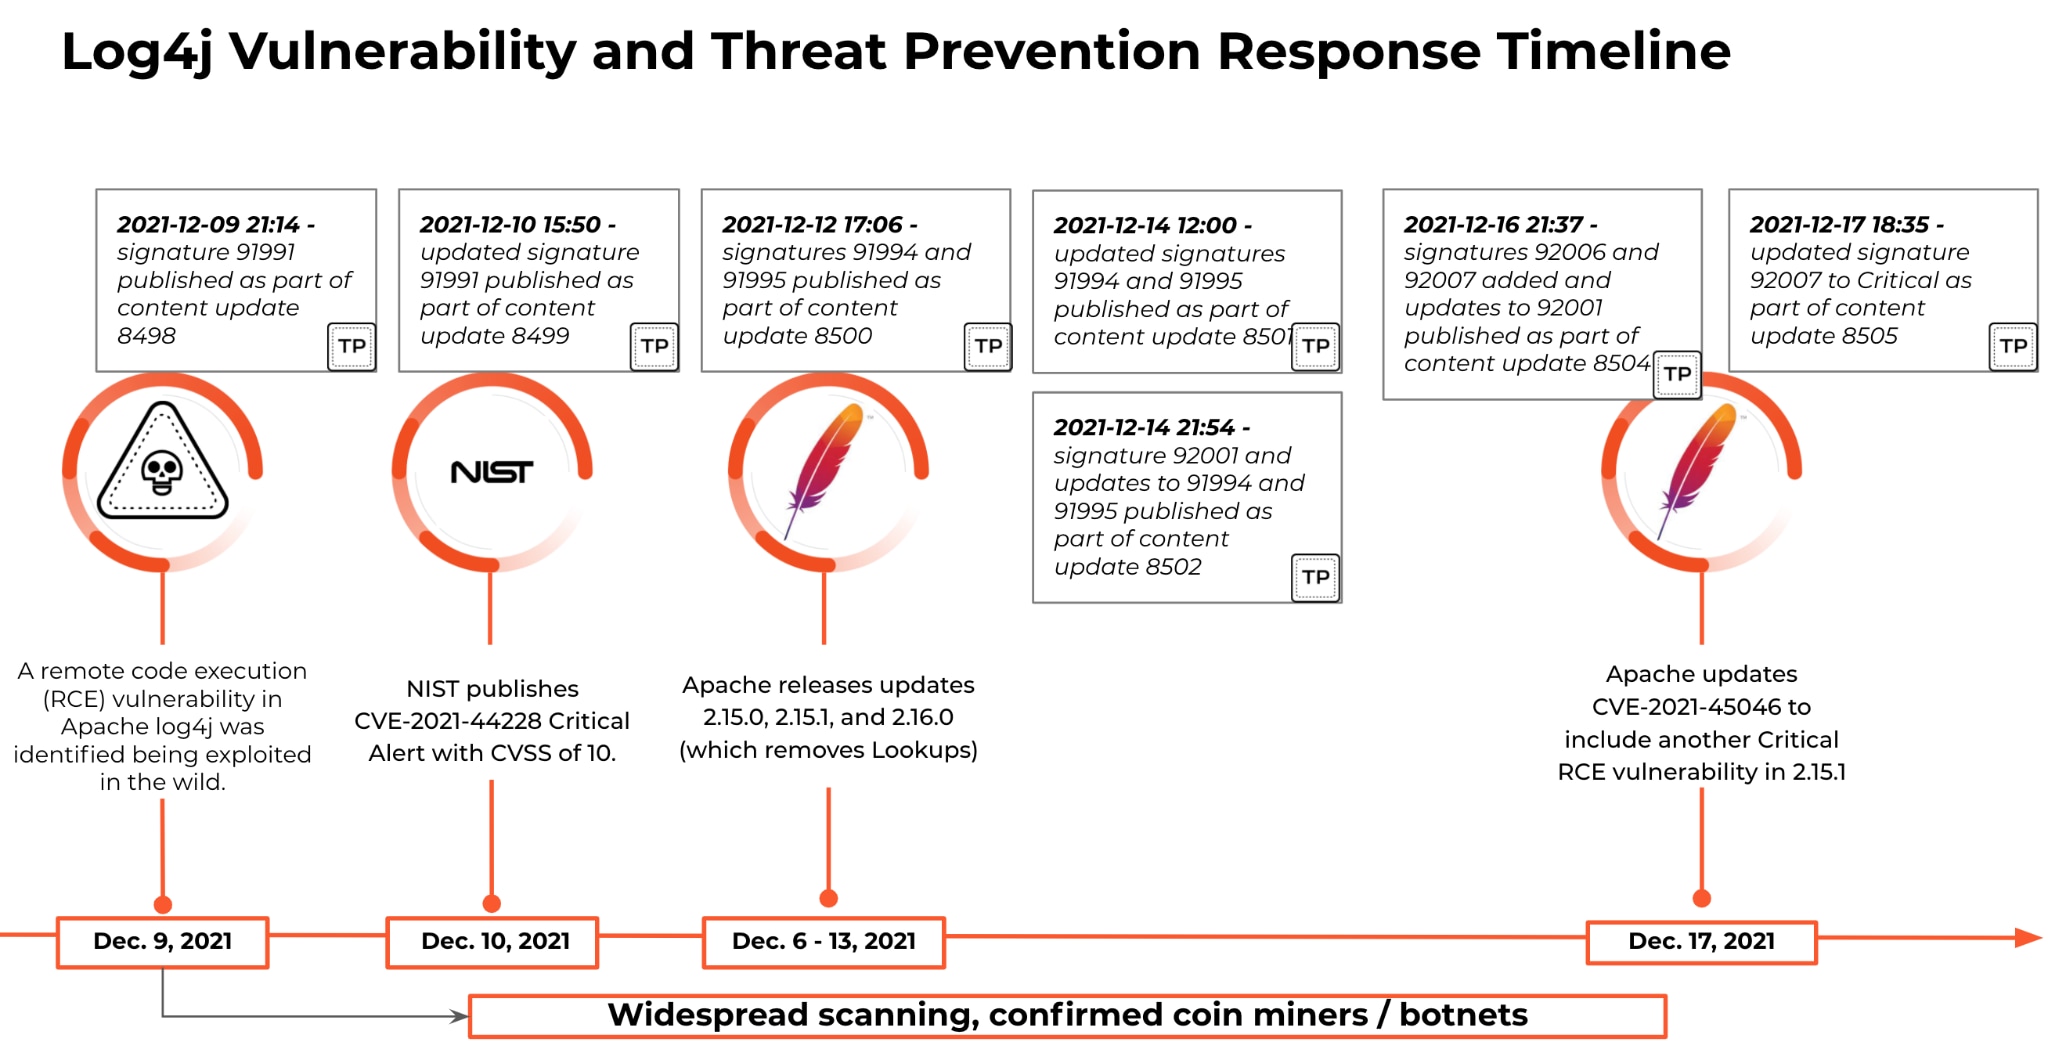 図2 Log4j 脆弱性と脅威防御のレスポンスタイムライン